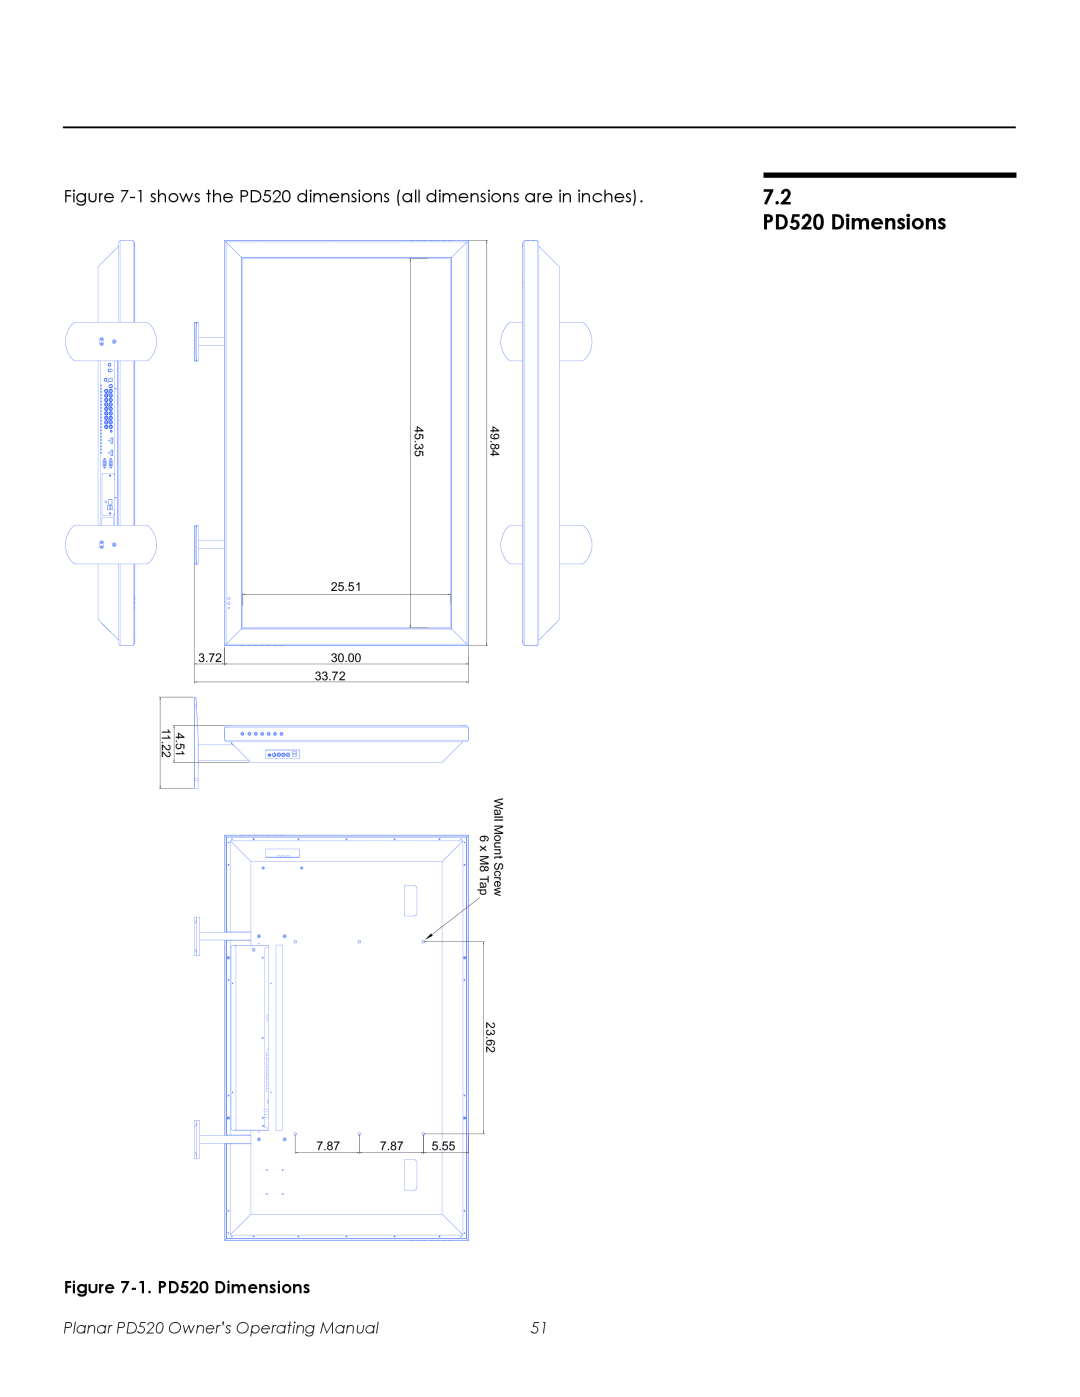 Planar manual 7.2 PD520 Dimensions, 45.35, 49.84, 25.51, Wall Mount Screw 6 x M8 Tap, 7.87, 5.55 